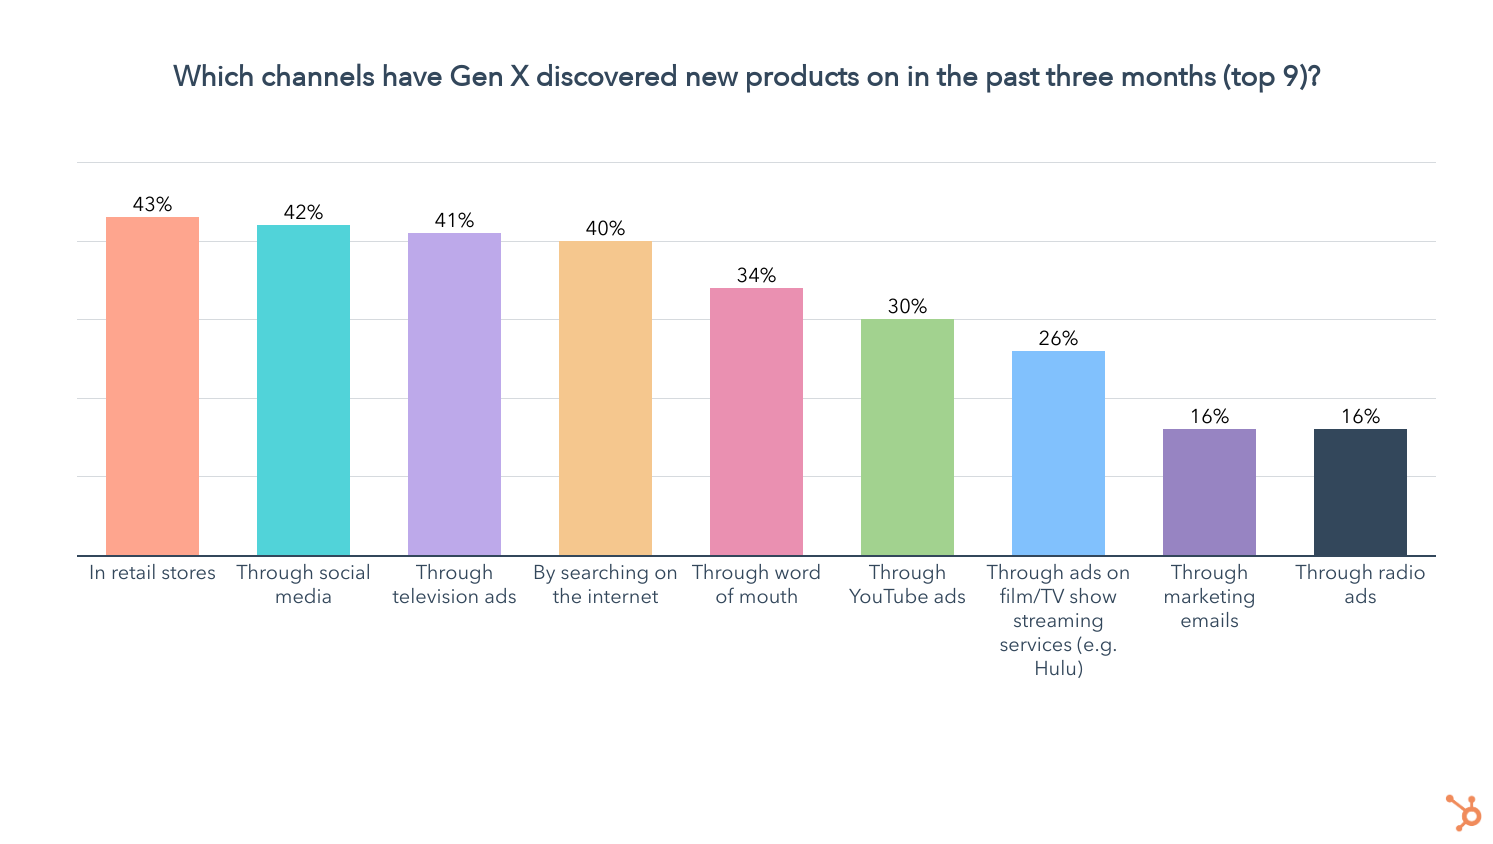 Cửa hàng bán lẻ là kênh hàng đầu mà Gen X đã phát hiện ra các sản phẩm mới trong ba tháng qua